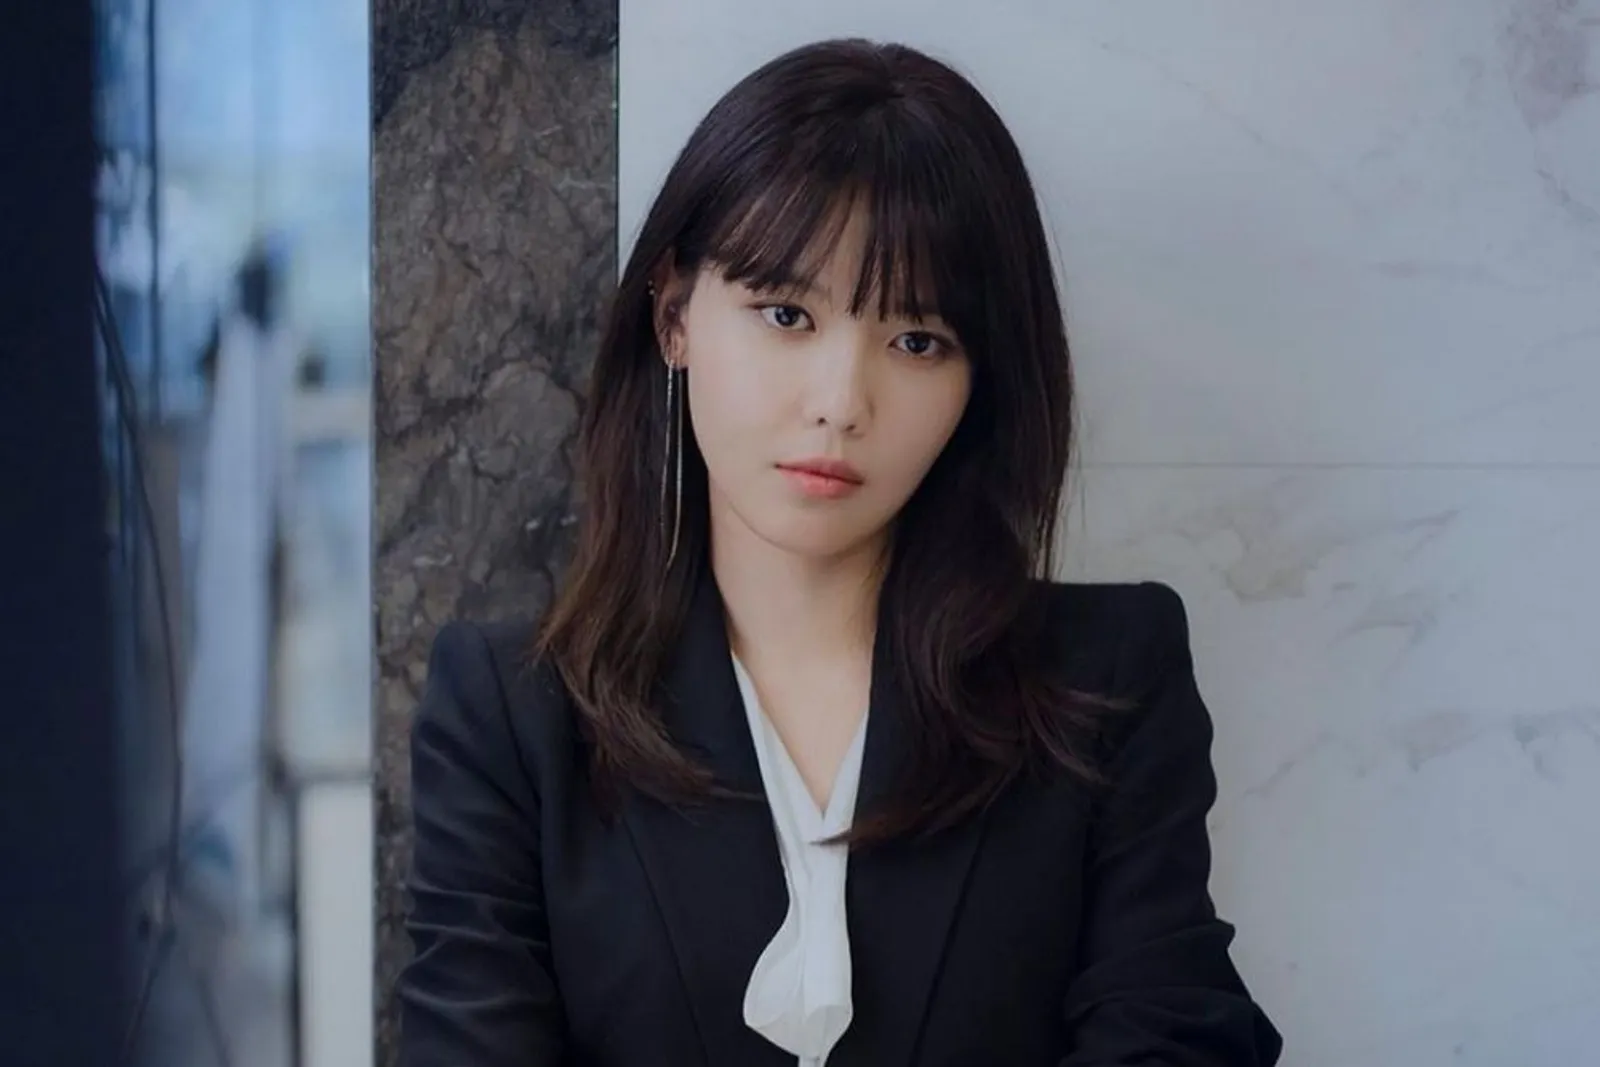 Potret Sooyoung 'SNSD', Pacar Jung Kyung Ho yang Main di Drama Terbaru